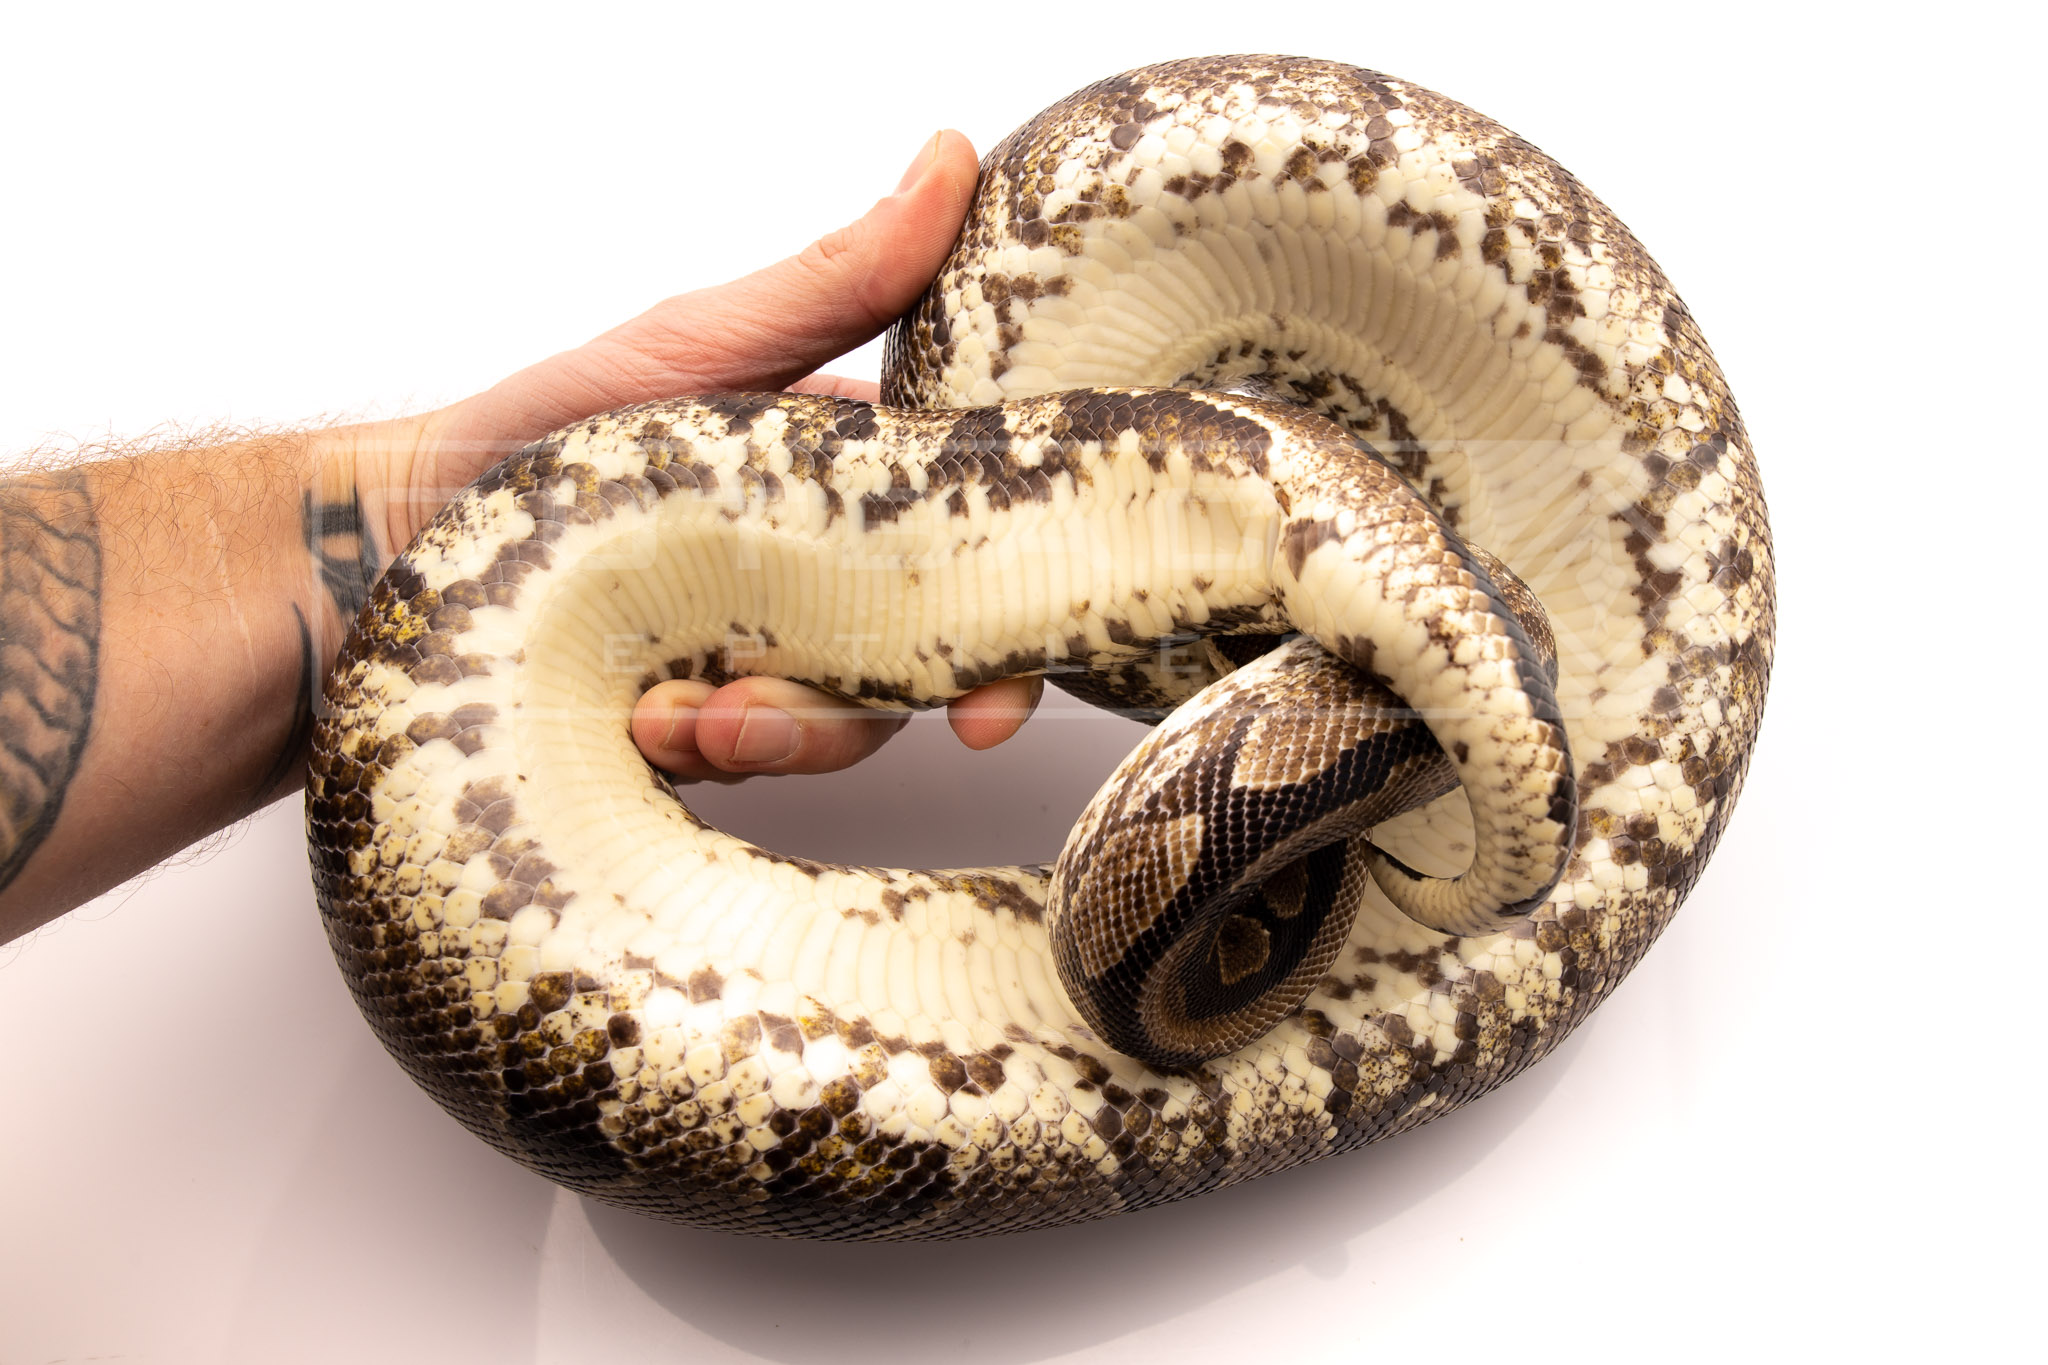 Black YB Dinker adult breeder ball python for sale